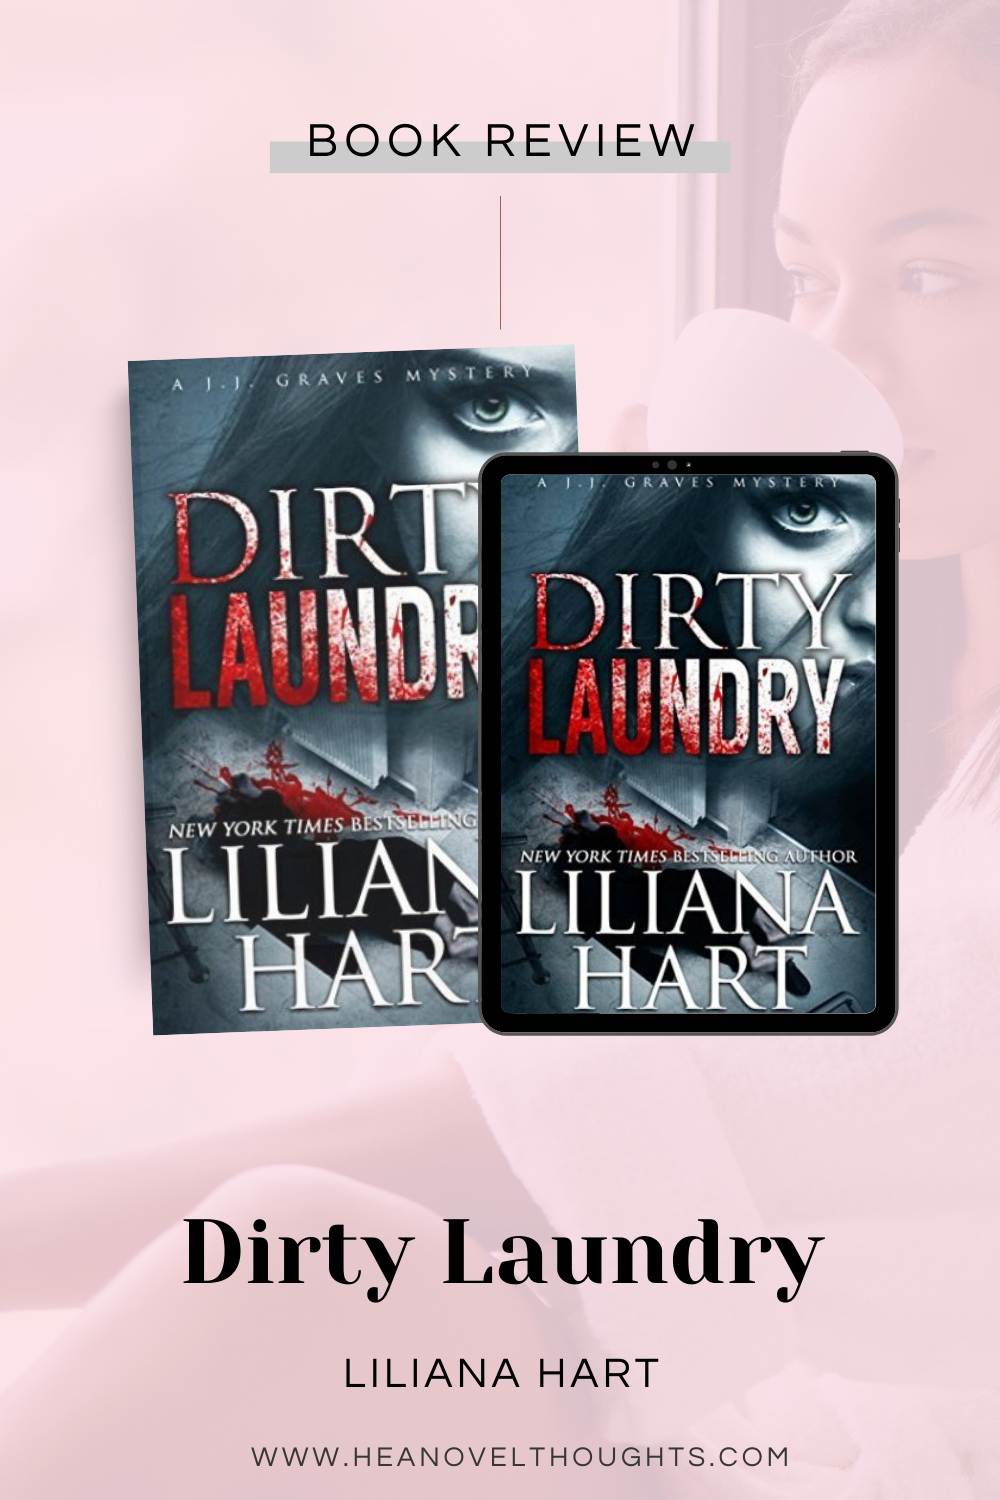 Dirty Laundry by Liliana Hart